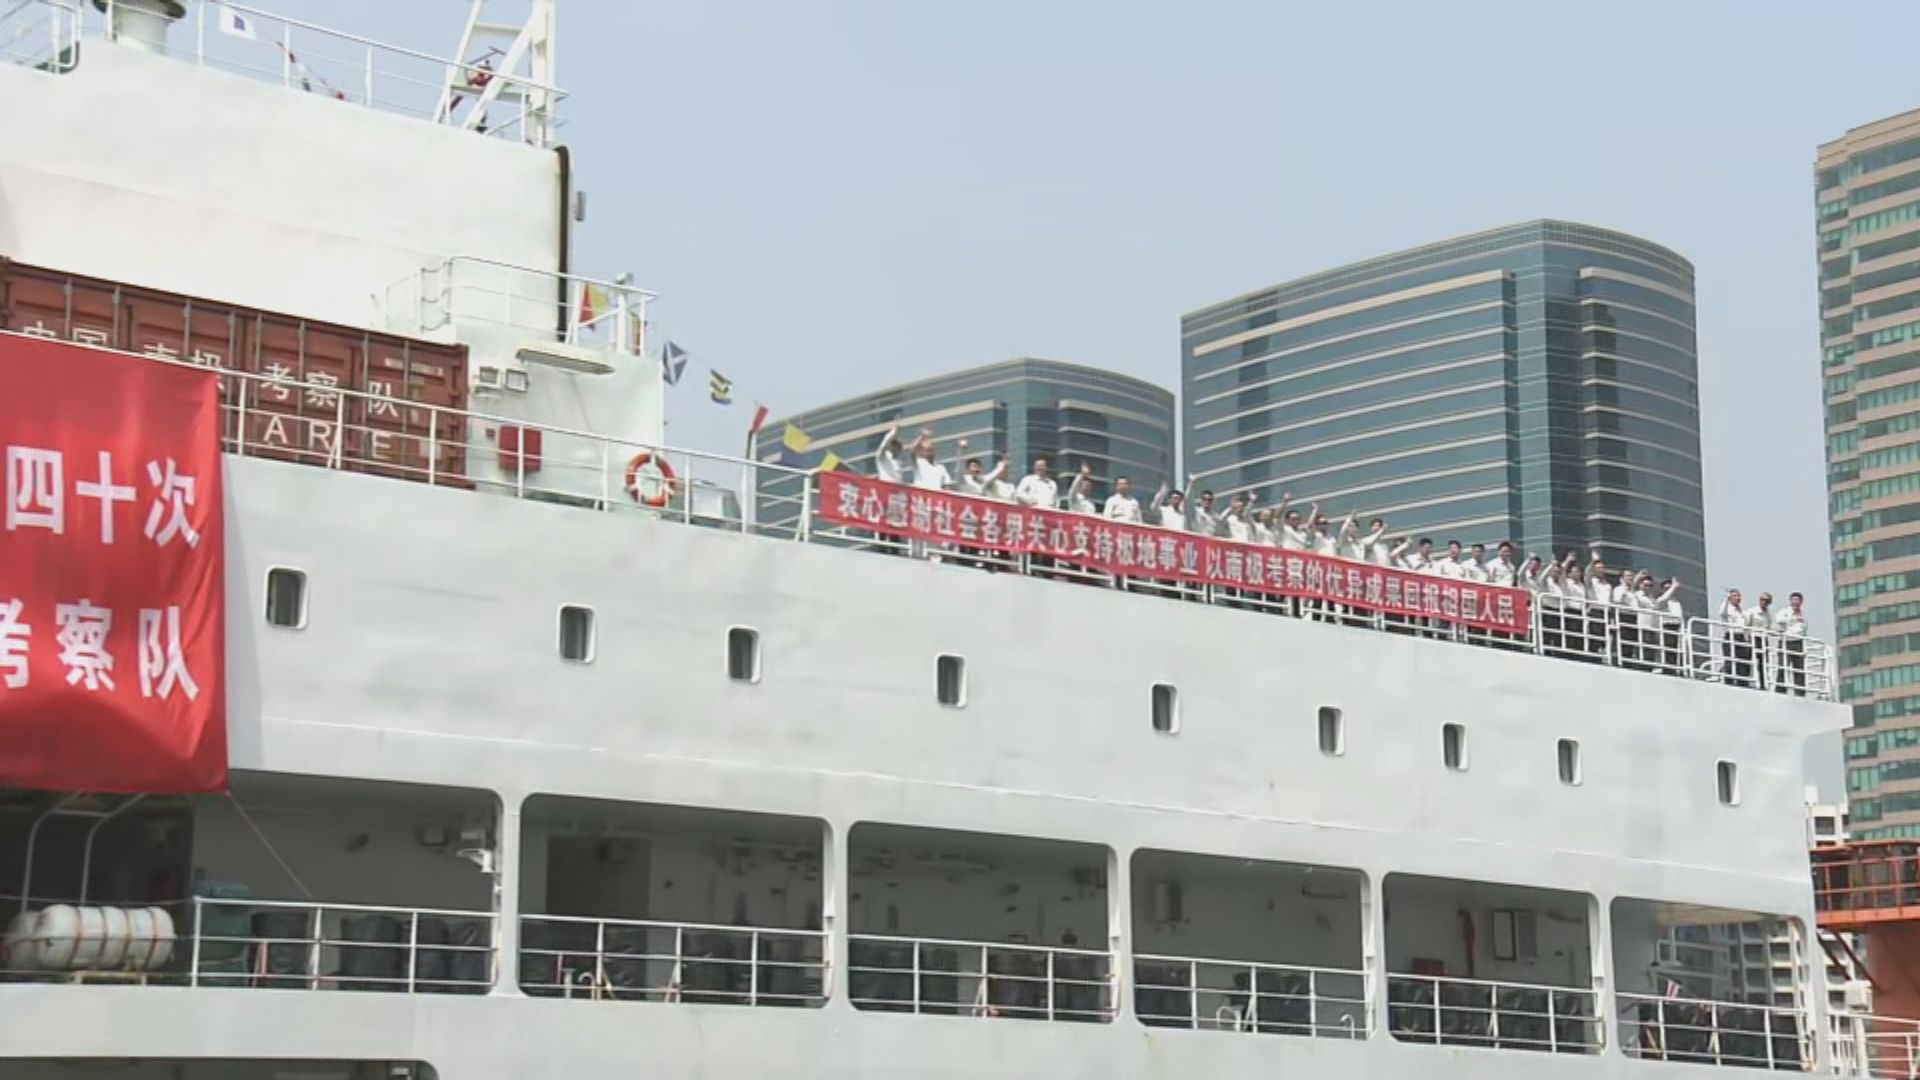 雪龍2號結束五日訪港行程離港